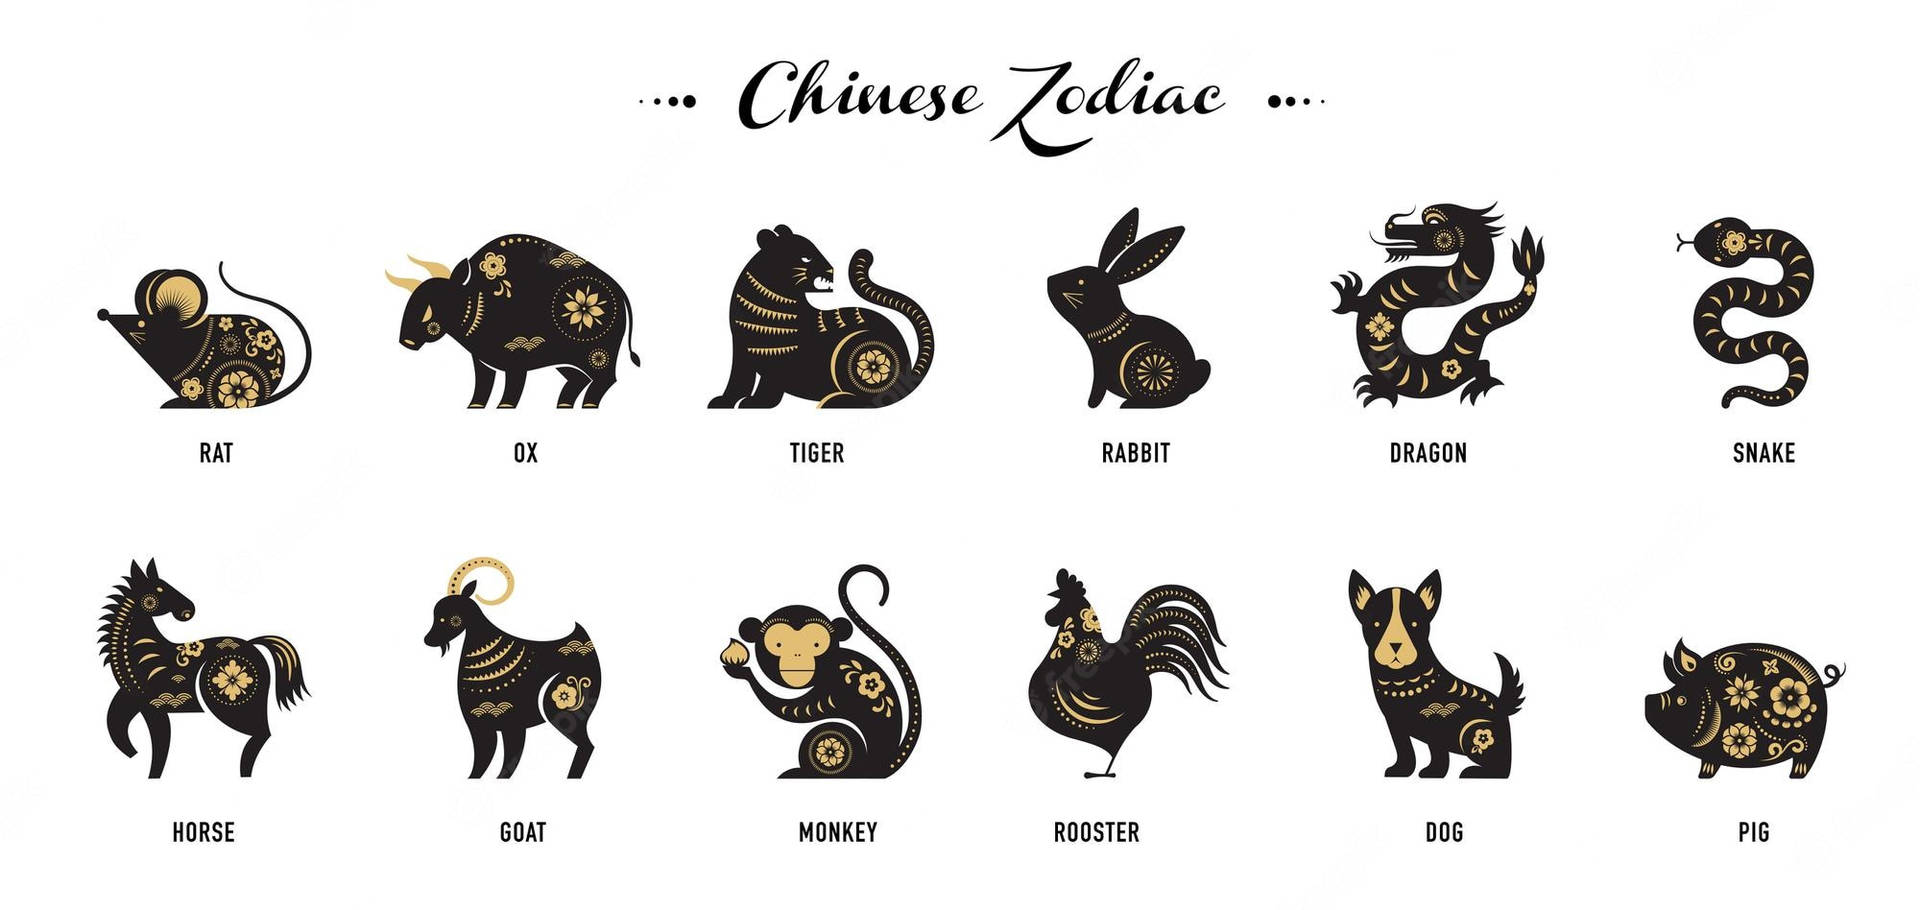 Chinesischetierkreiszeichen Ratte Wallpaper